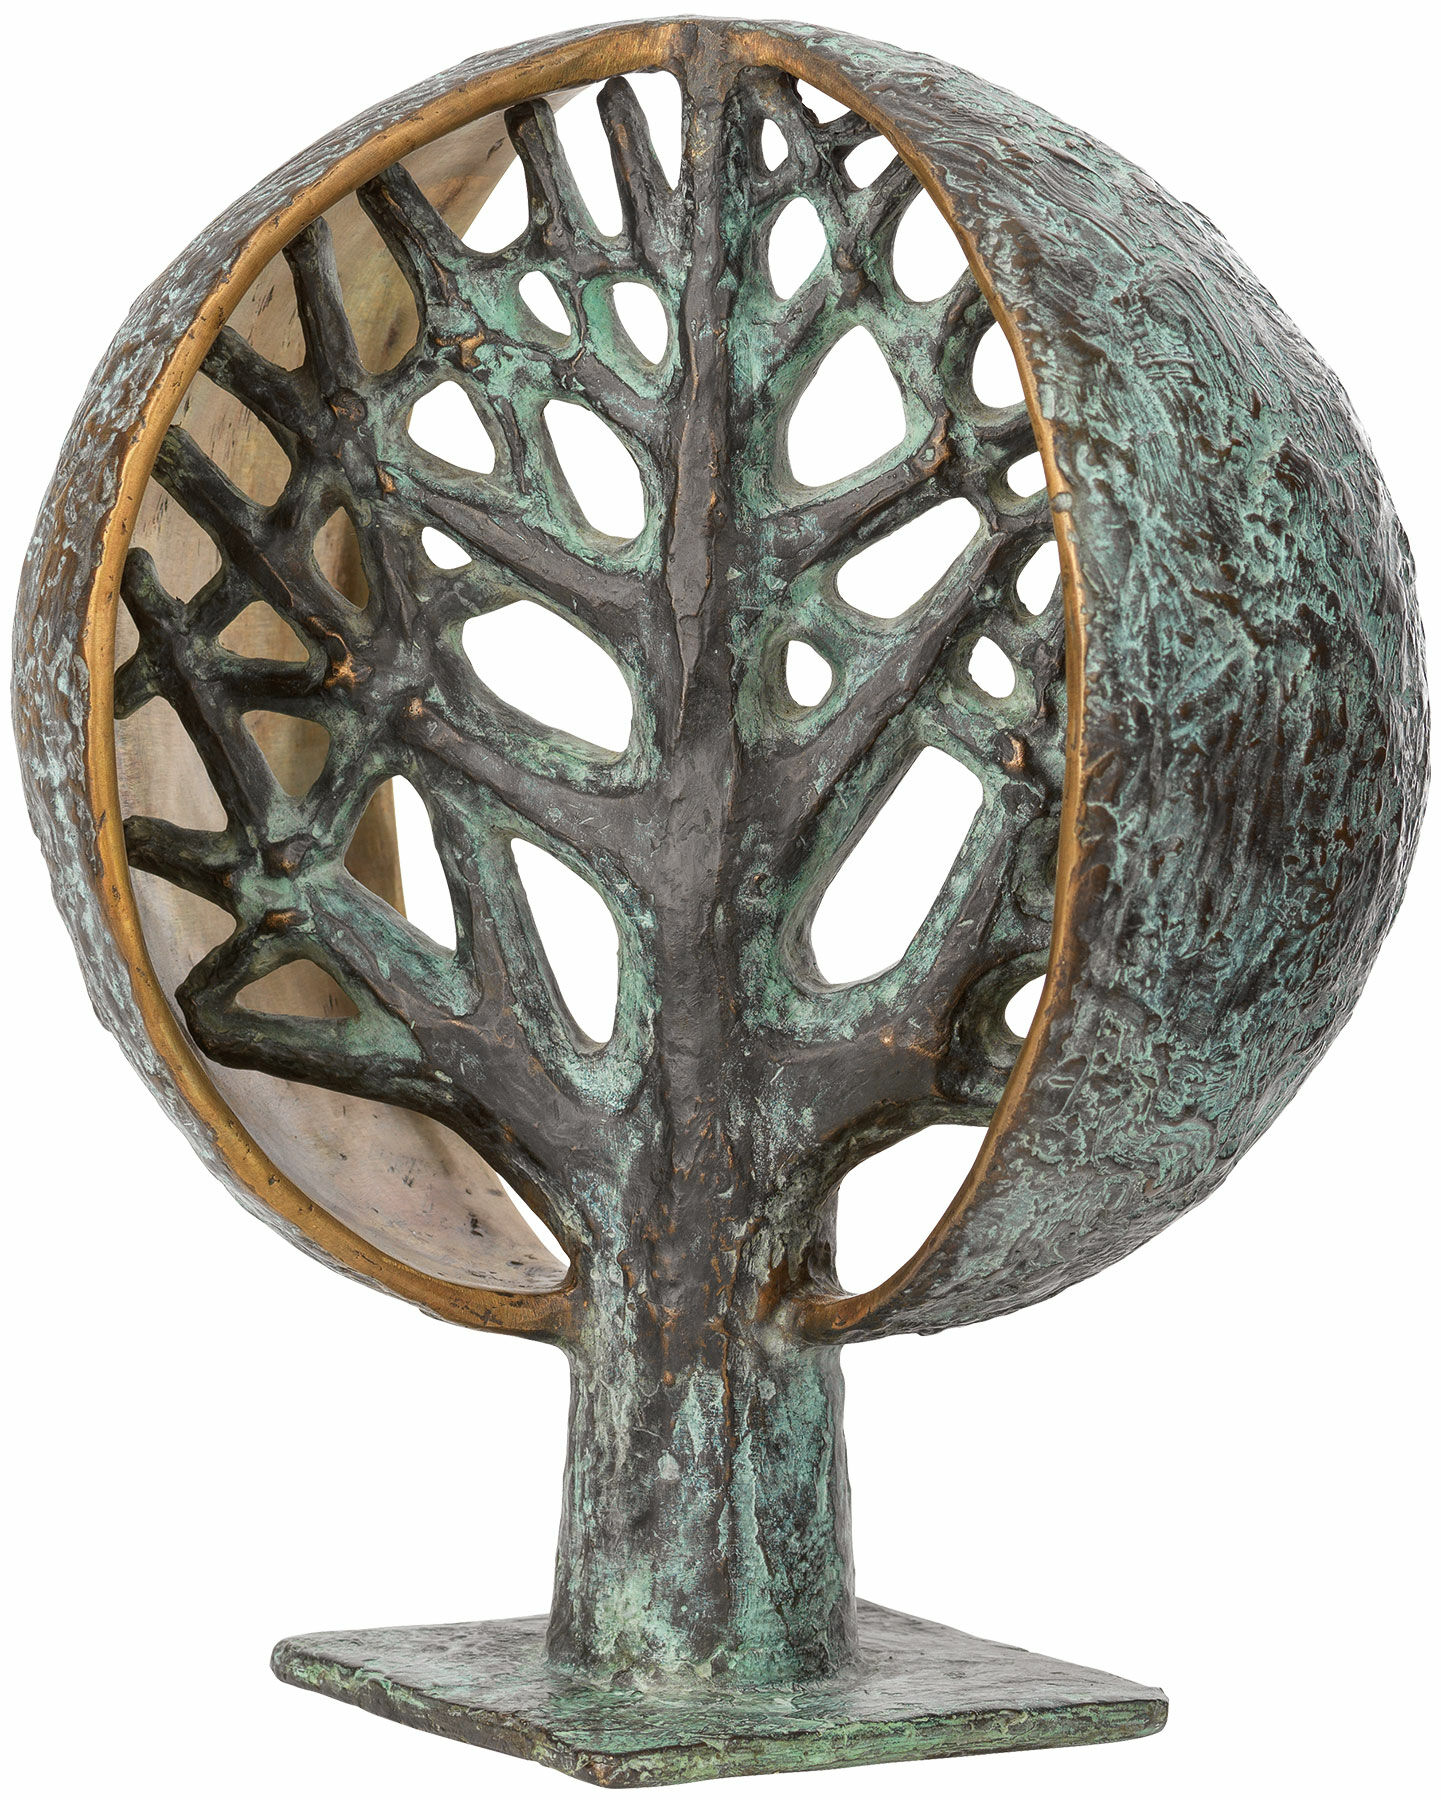 Skulptur "Lebensbaum" (1979), Bronze von Gerhard Brandes